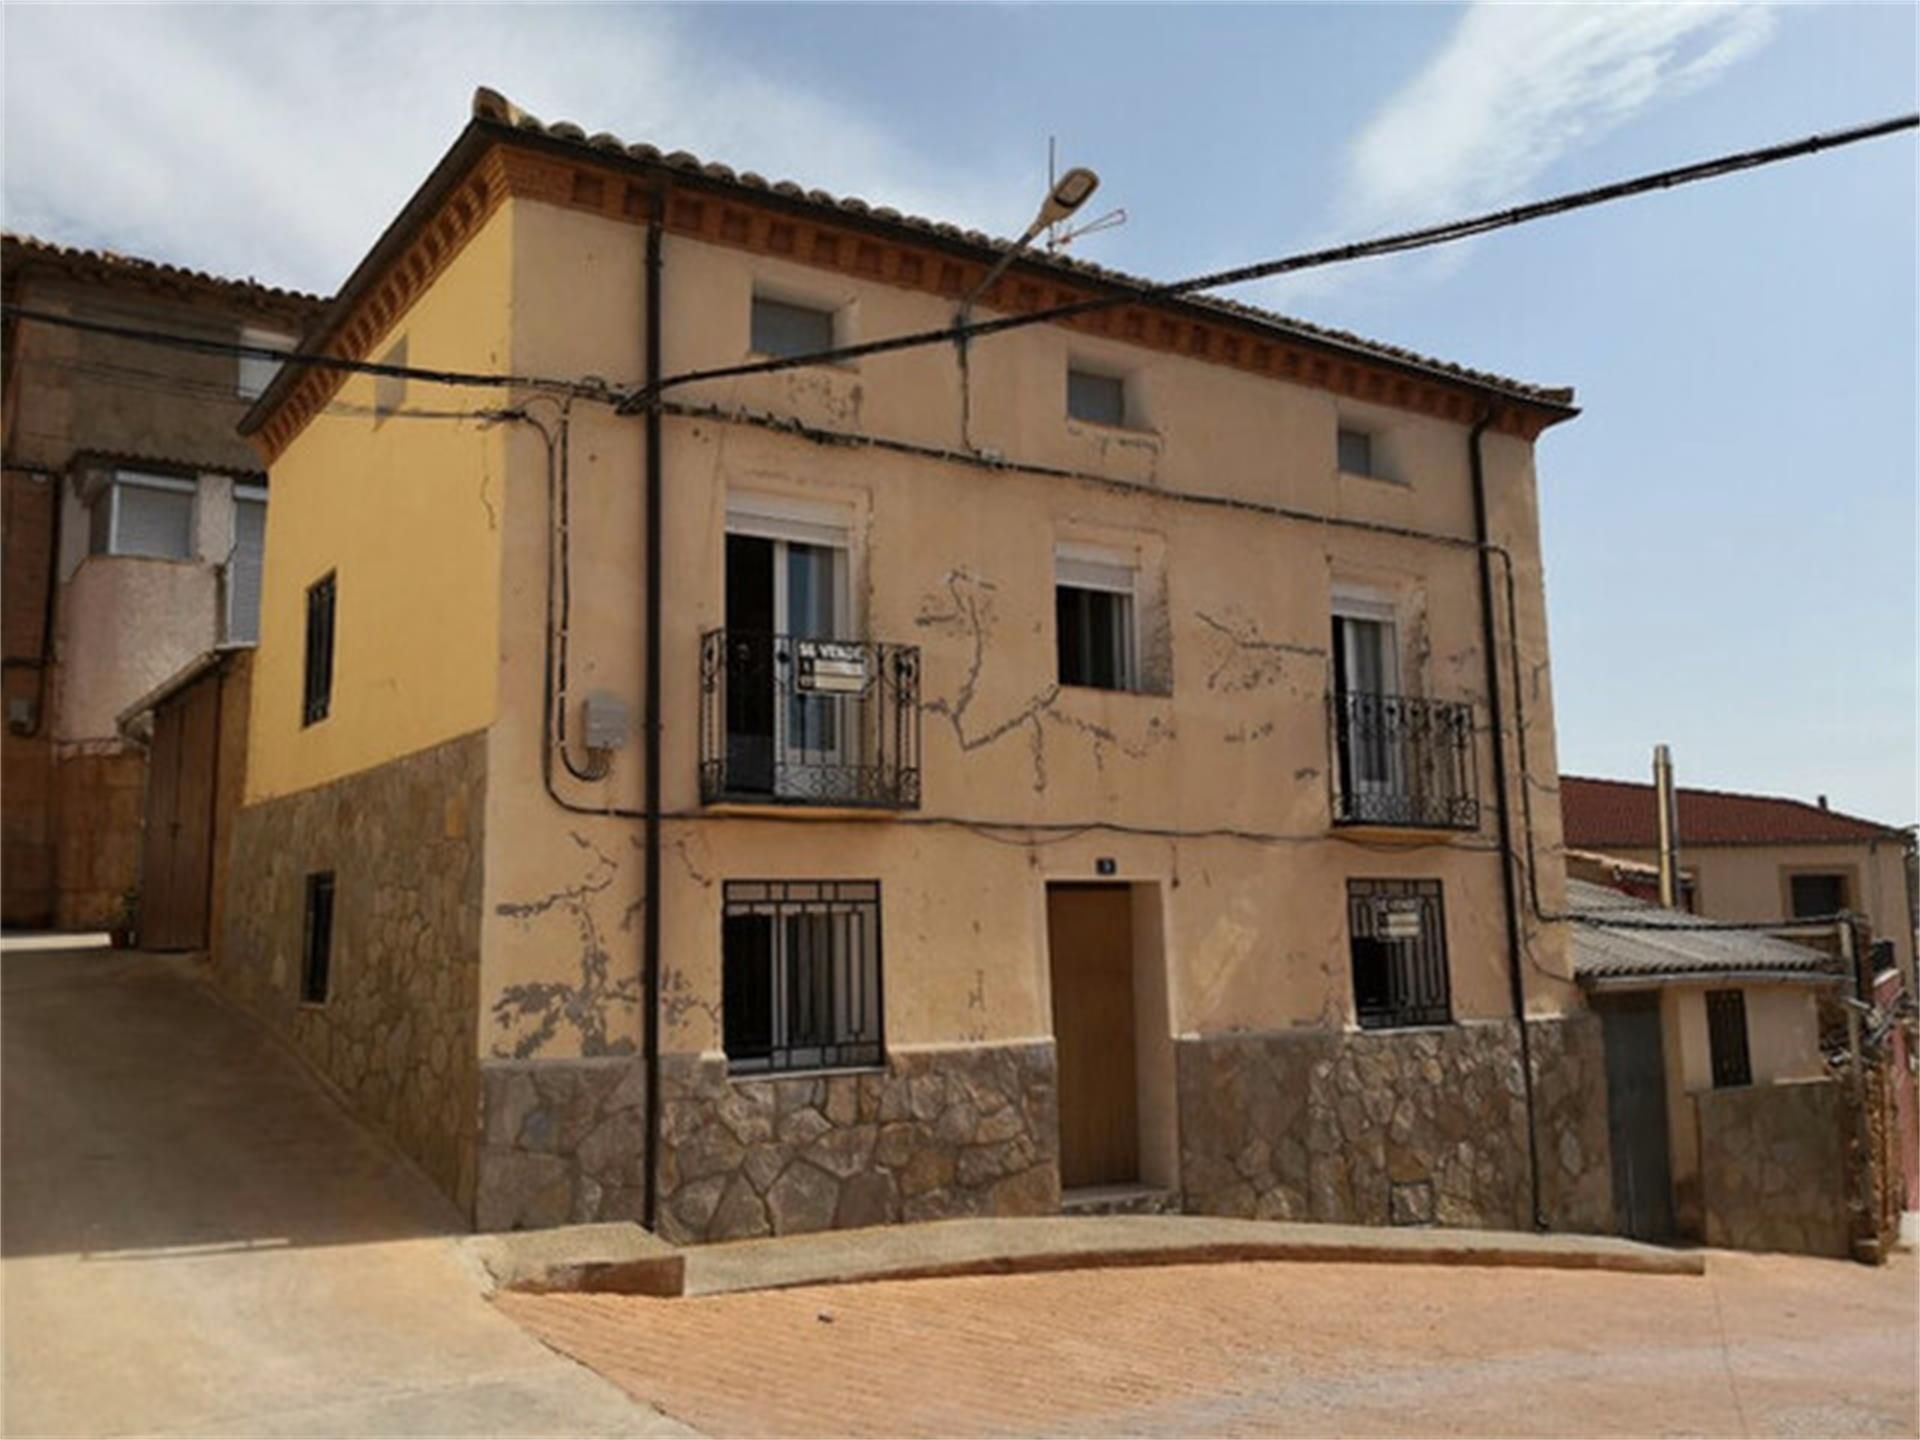 Viviendas y casas baratas en venta en Santa Isabel - Movera, Zaragoza  Capital: Desde € - Chollos y Gangas | fotocasa